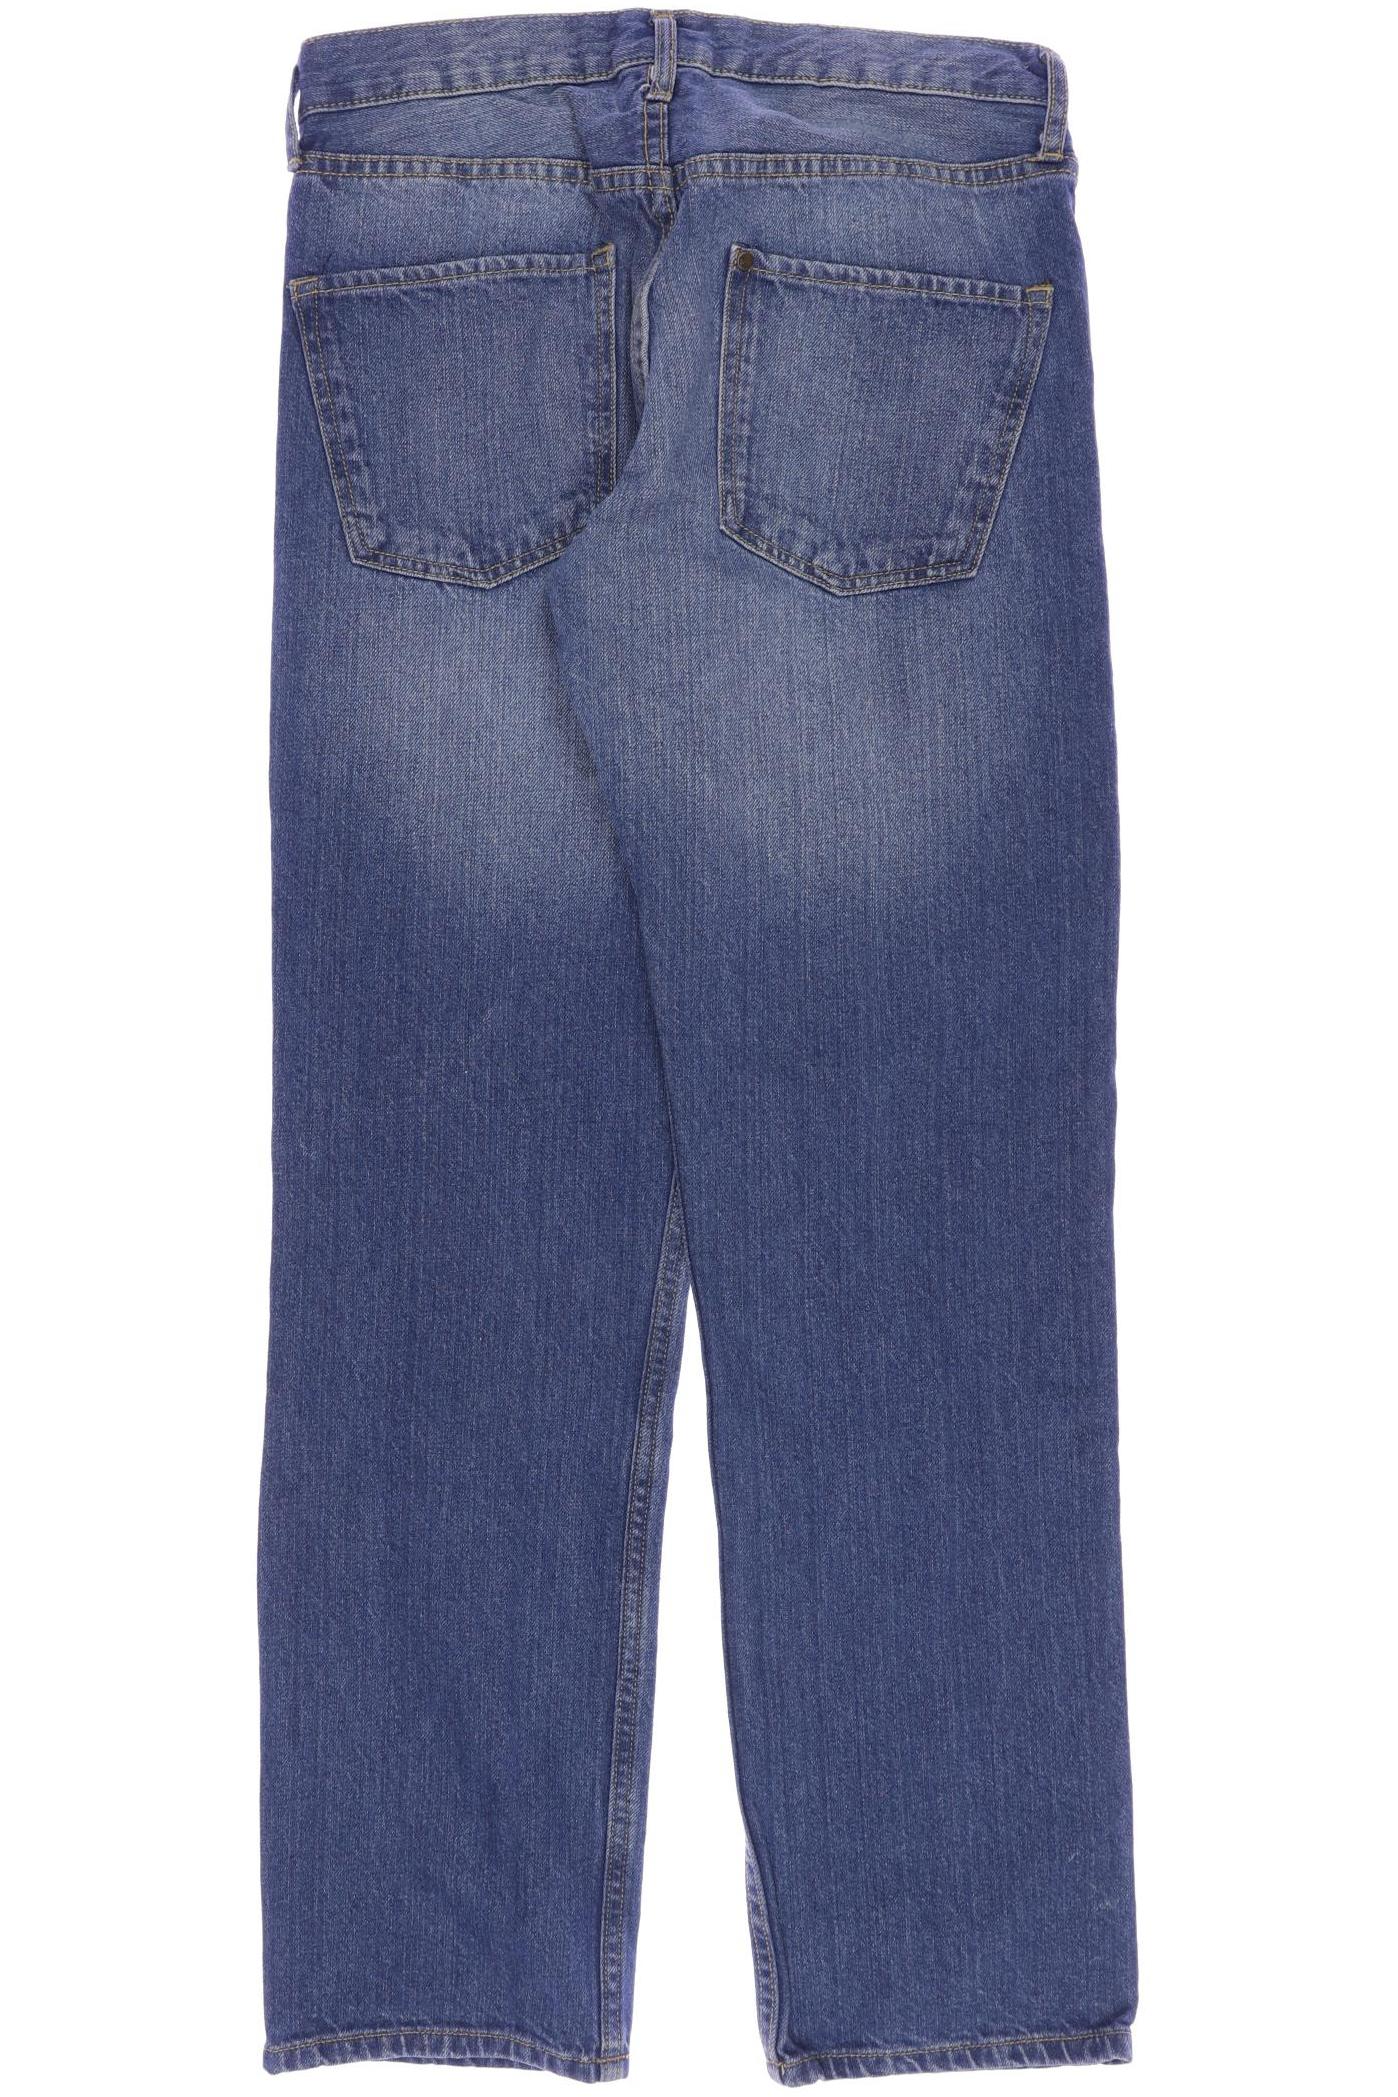 H&M Herren Jeans, blau, Gr. 158 von H&M